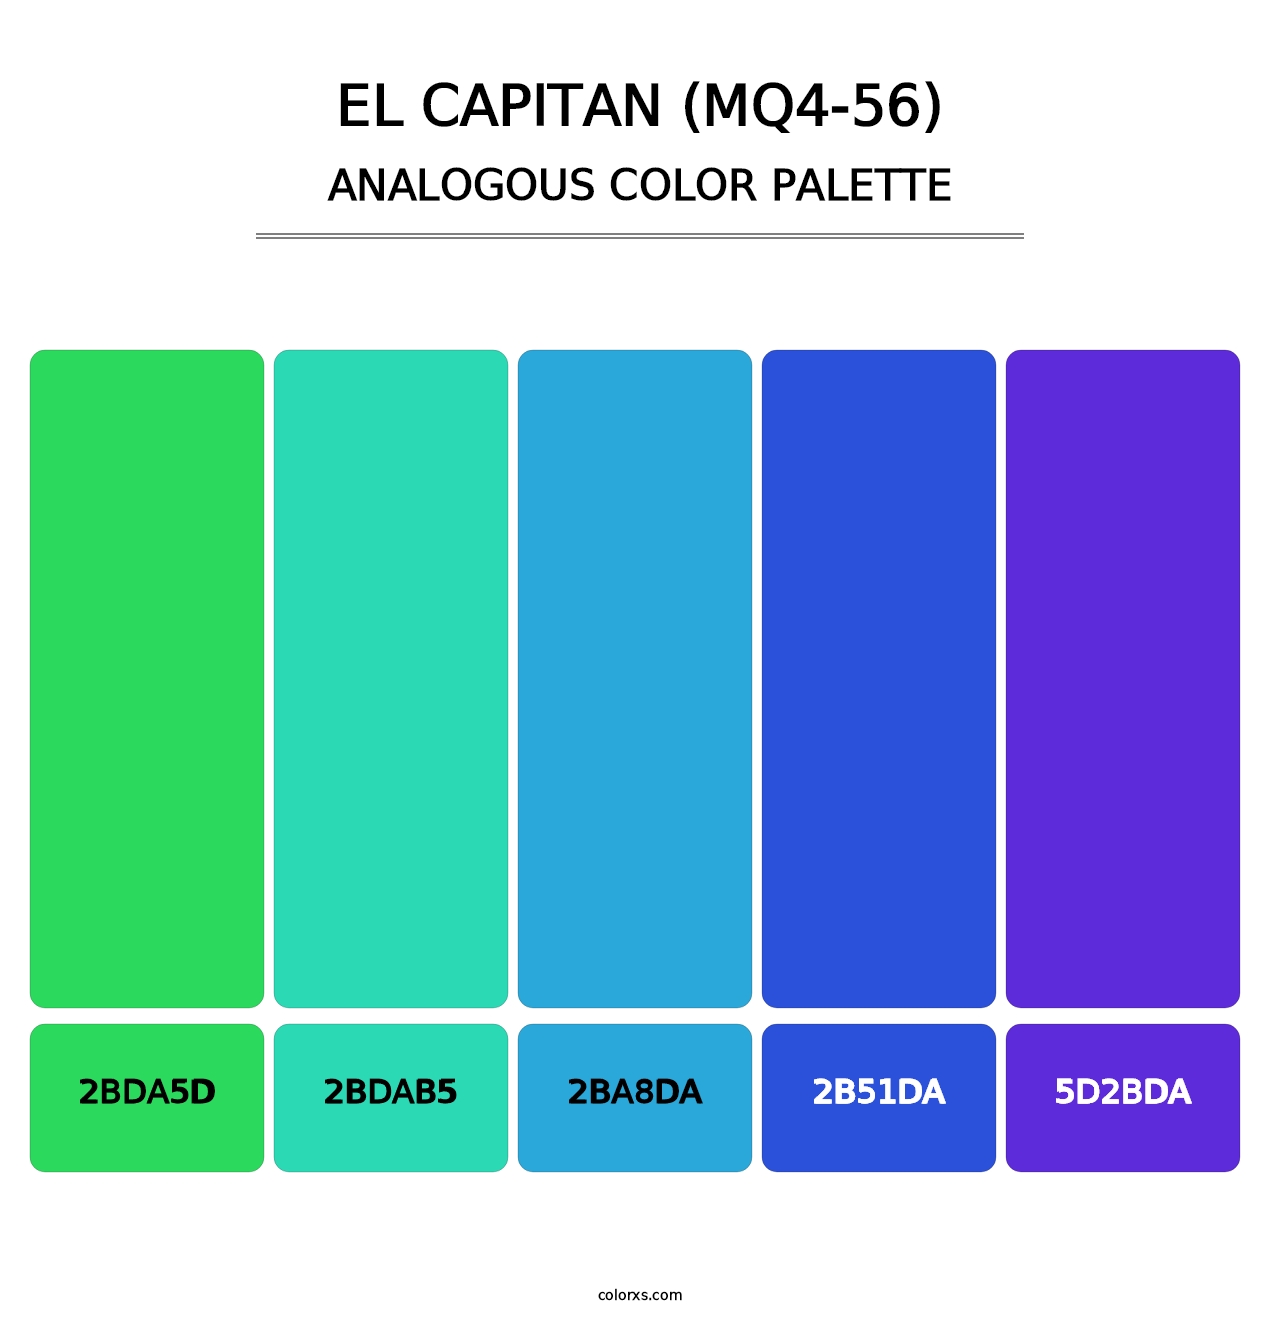 El Capitan (MQ4-56) - Analogous Color Palette